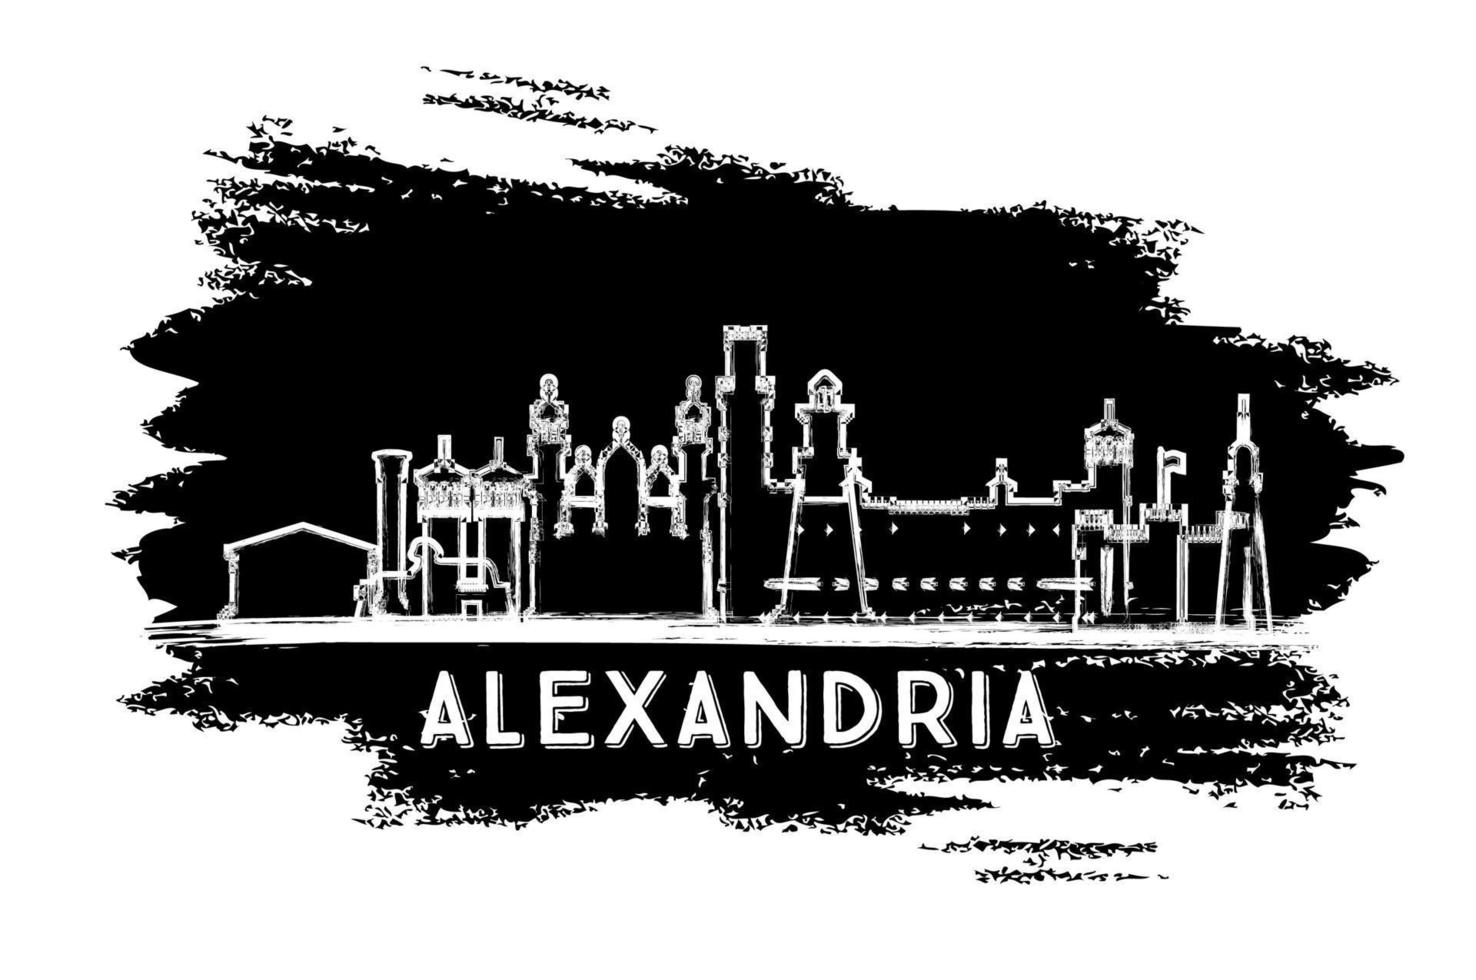 silueta del horizonte de la ciudad de alejandría egipto. boceto dibujado a mano. vector